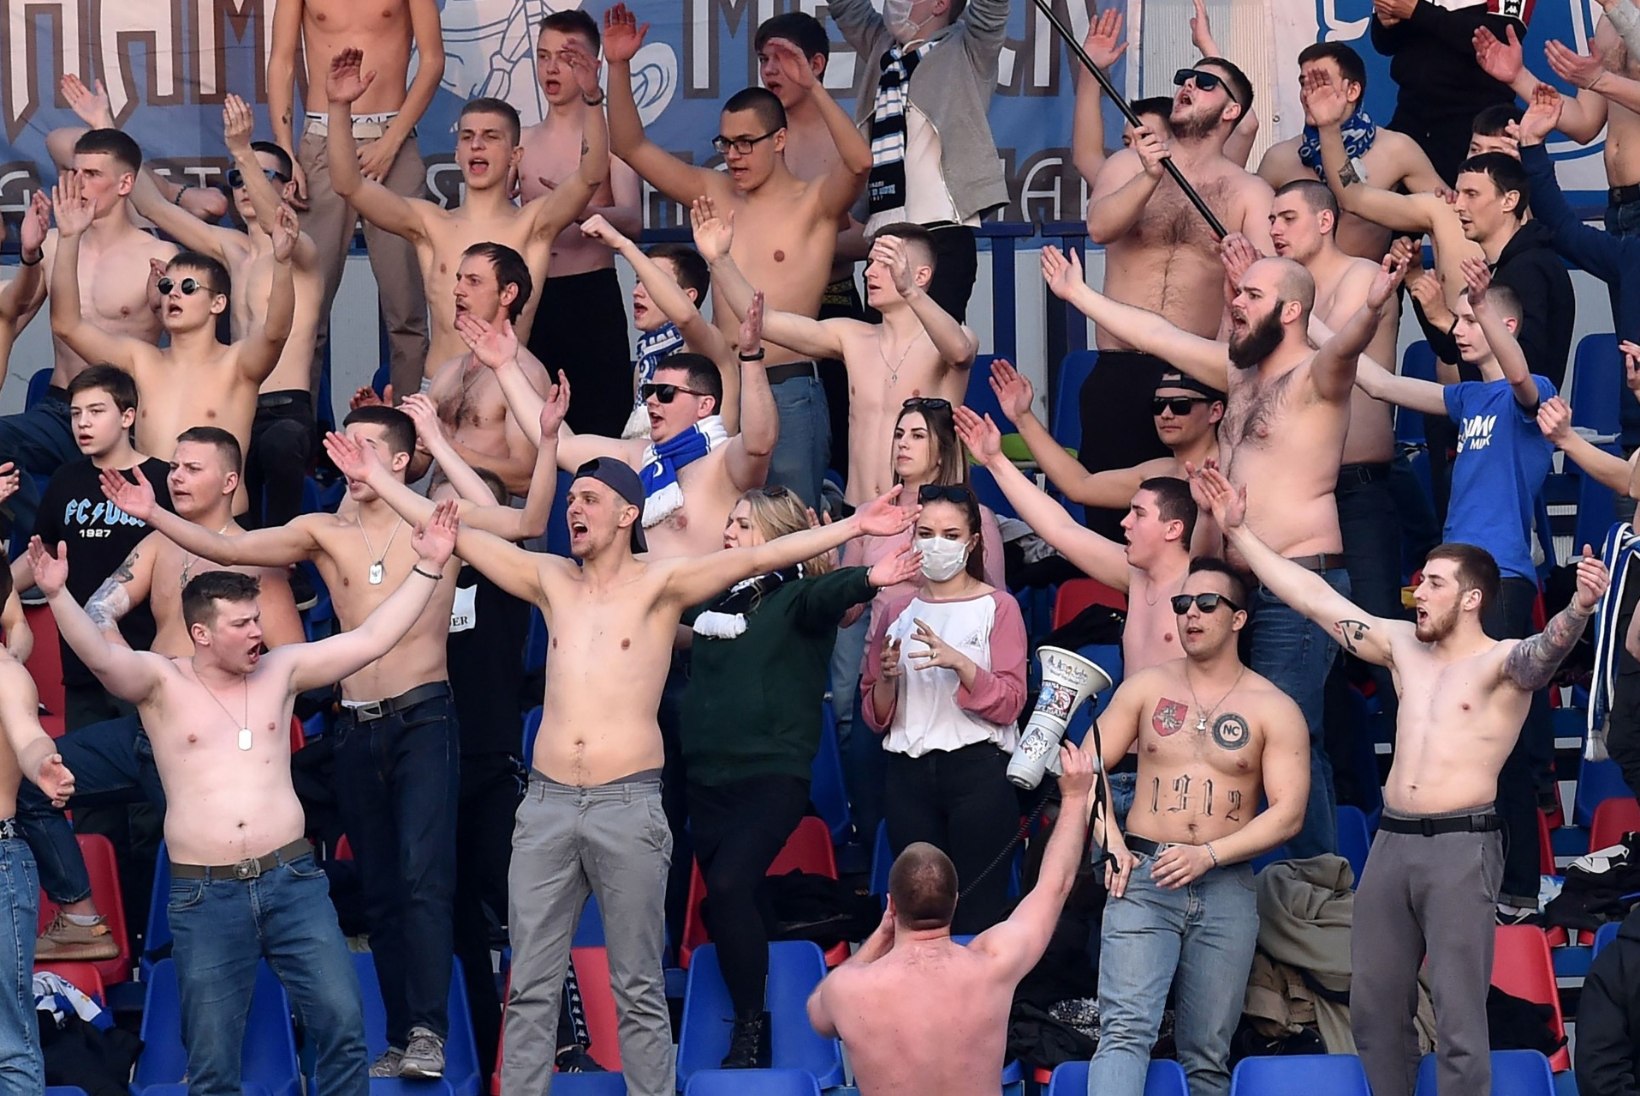 ABSURDSED FOTOD | Minsk pisikuid ei usu: Valgevene kõrgliigas toimuvad mängud pilgeni täis staadionitel